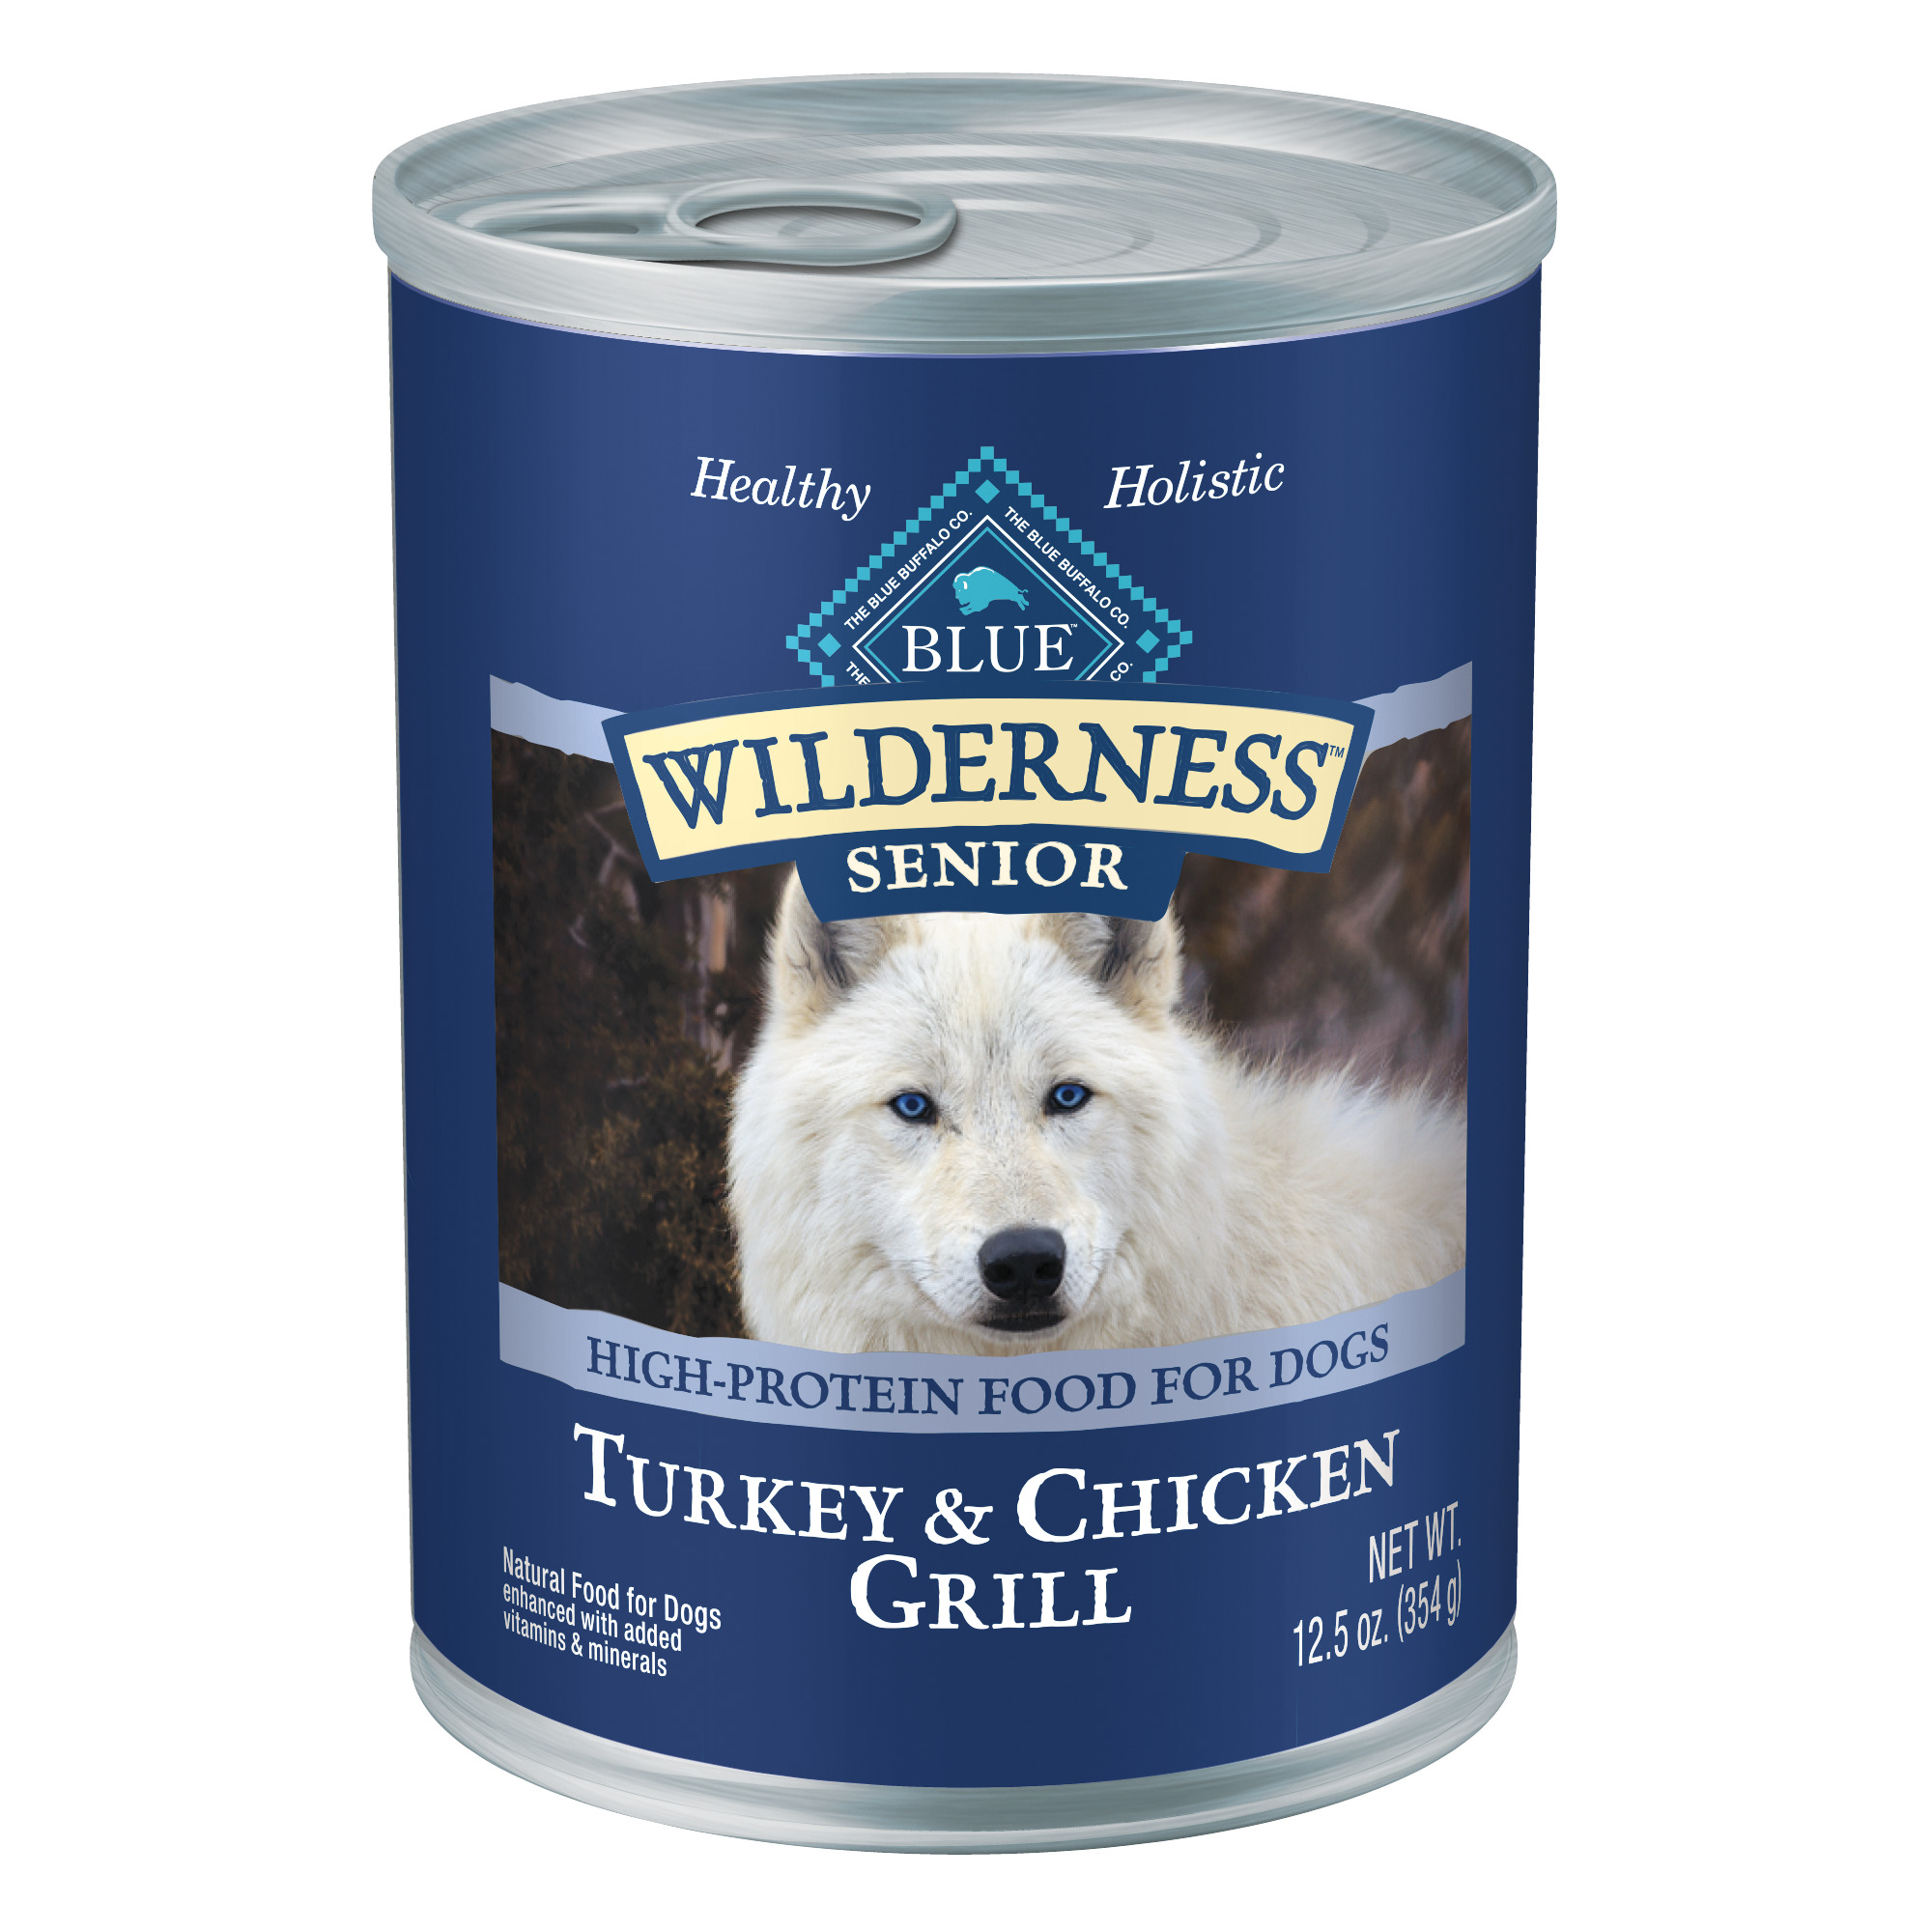 BLUE Wilderness Turkey & Chicken Grill for Senior Dogs, 12.5 oz